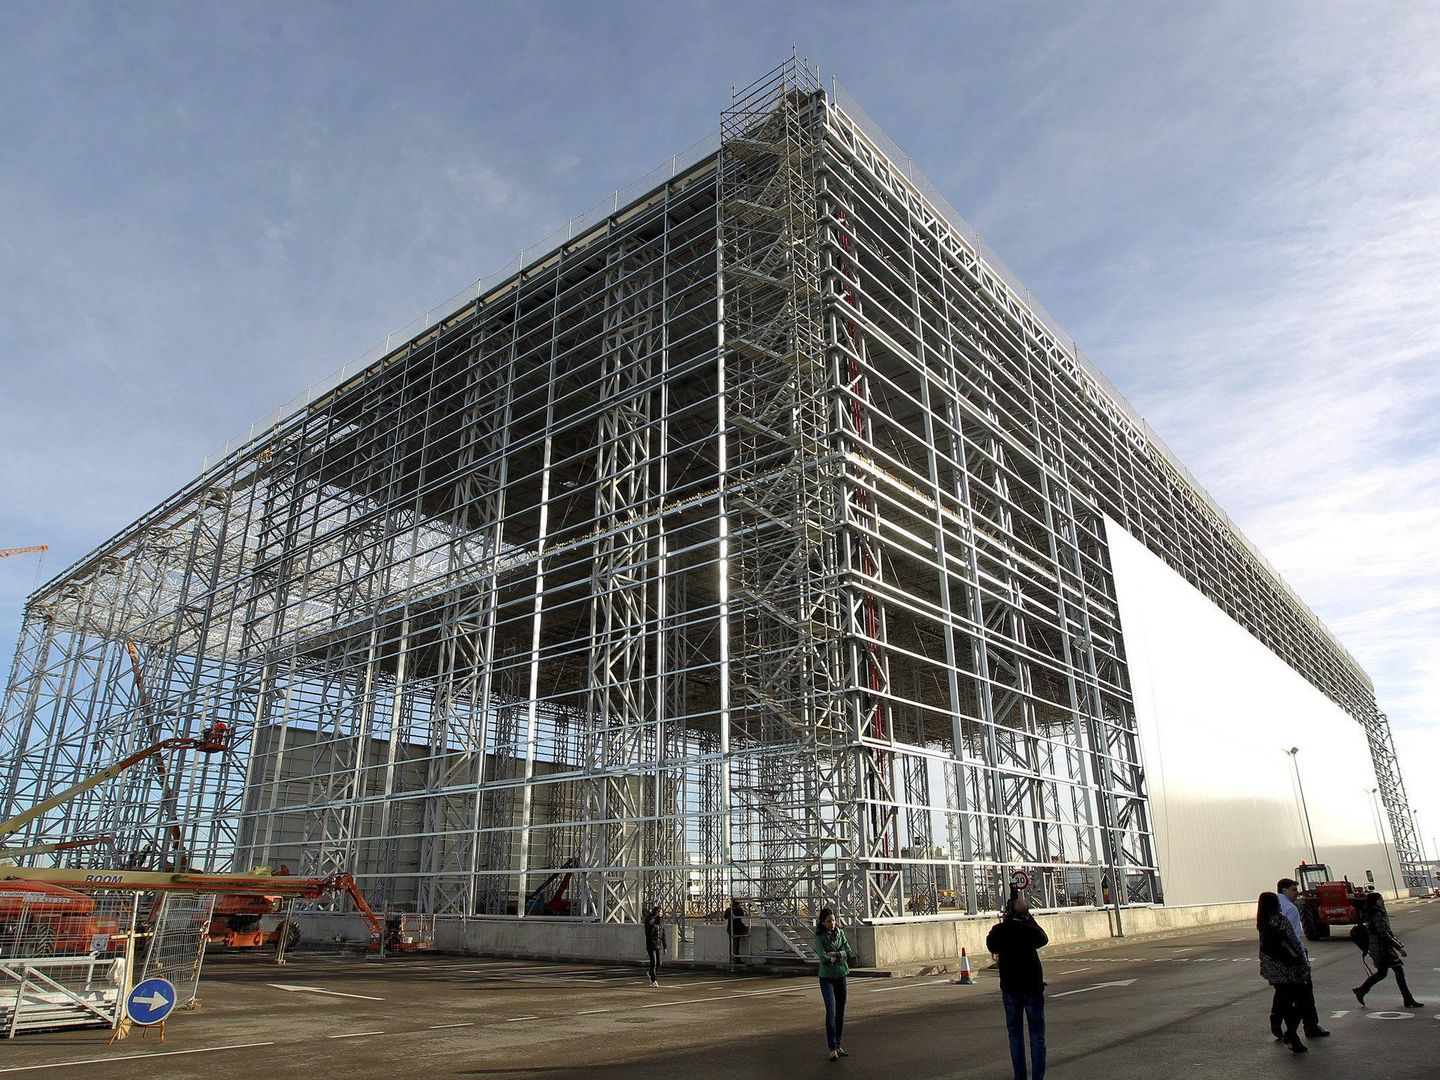 Imagen de 2012 de uno de los silos de Plataforma Europa en Zaragoza. (EFE/Javier Cebollada)